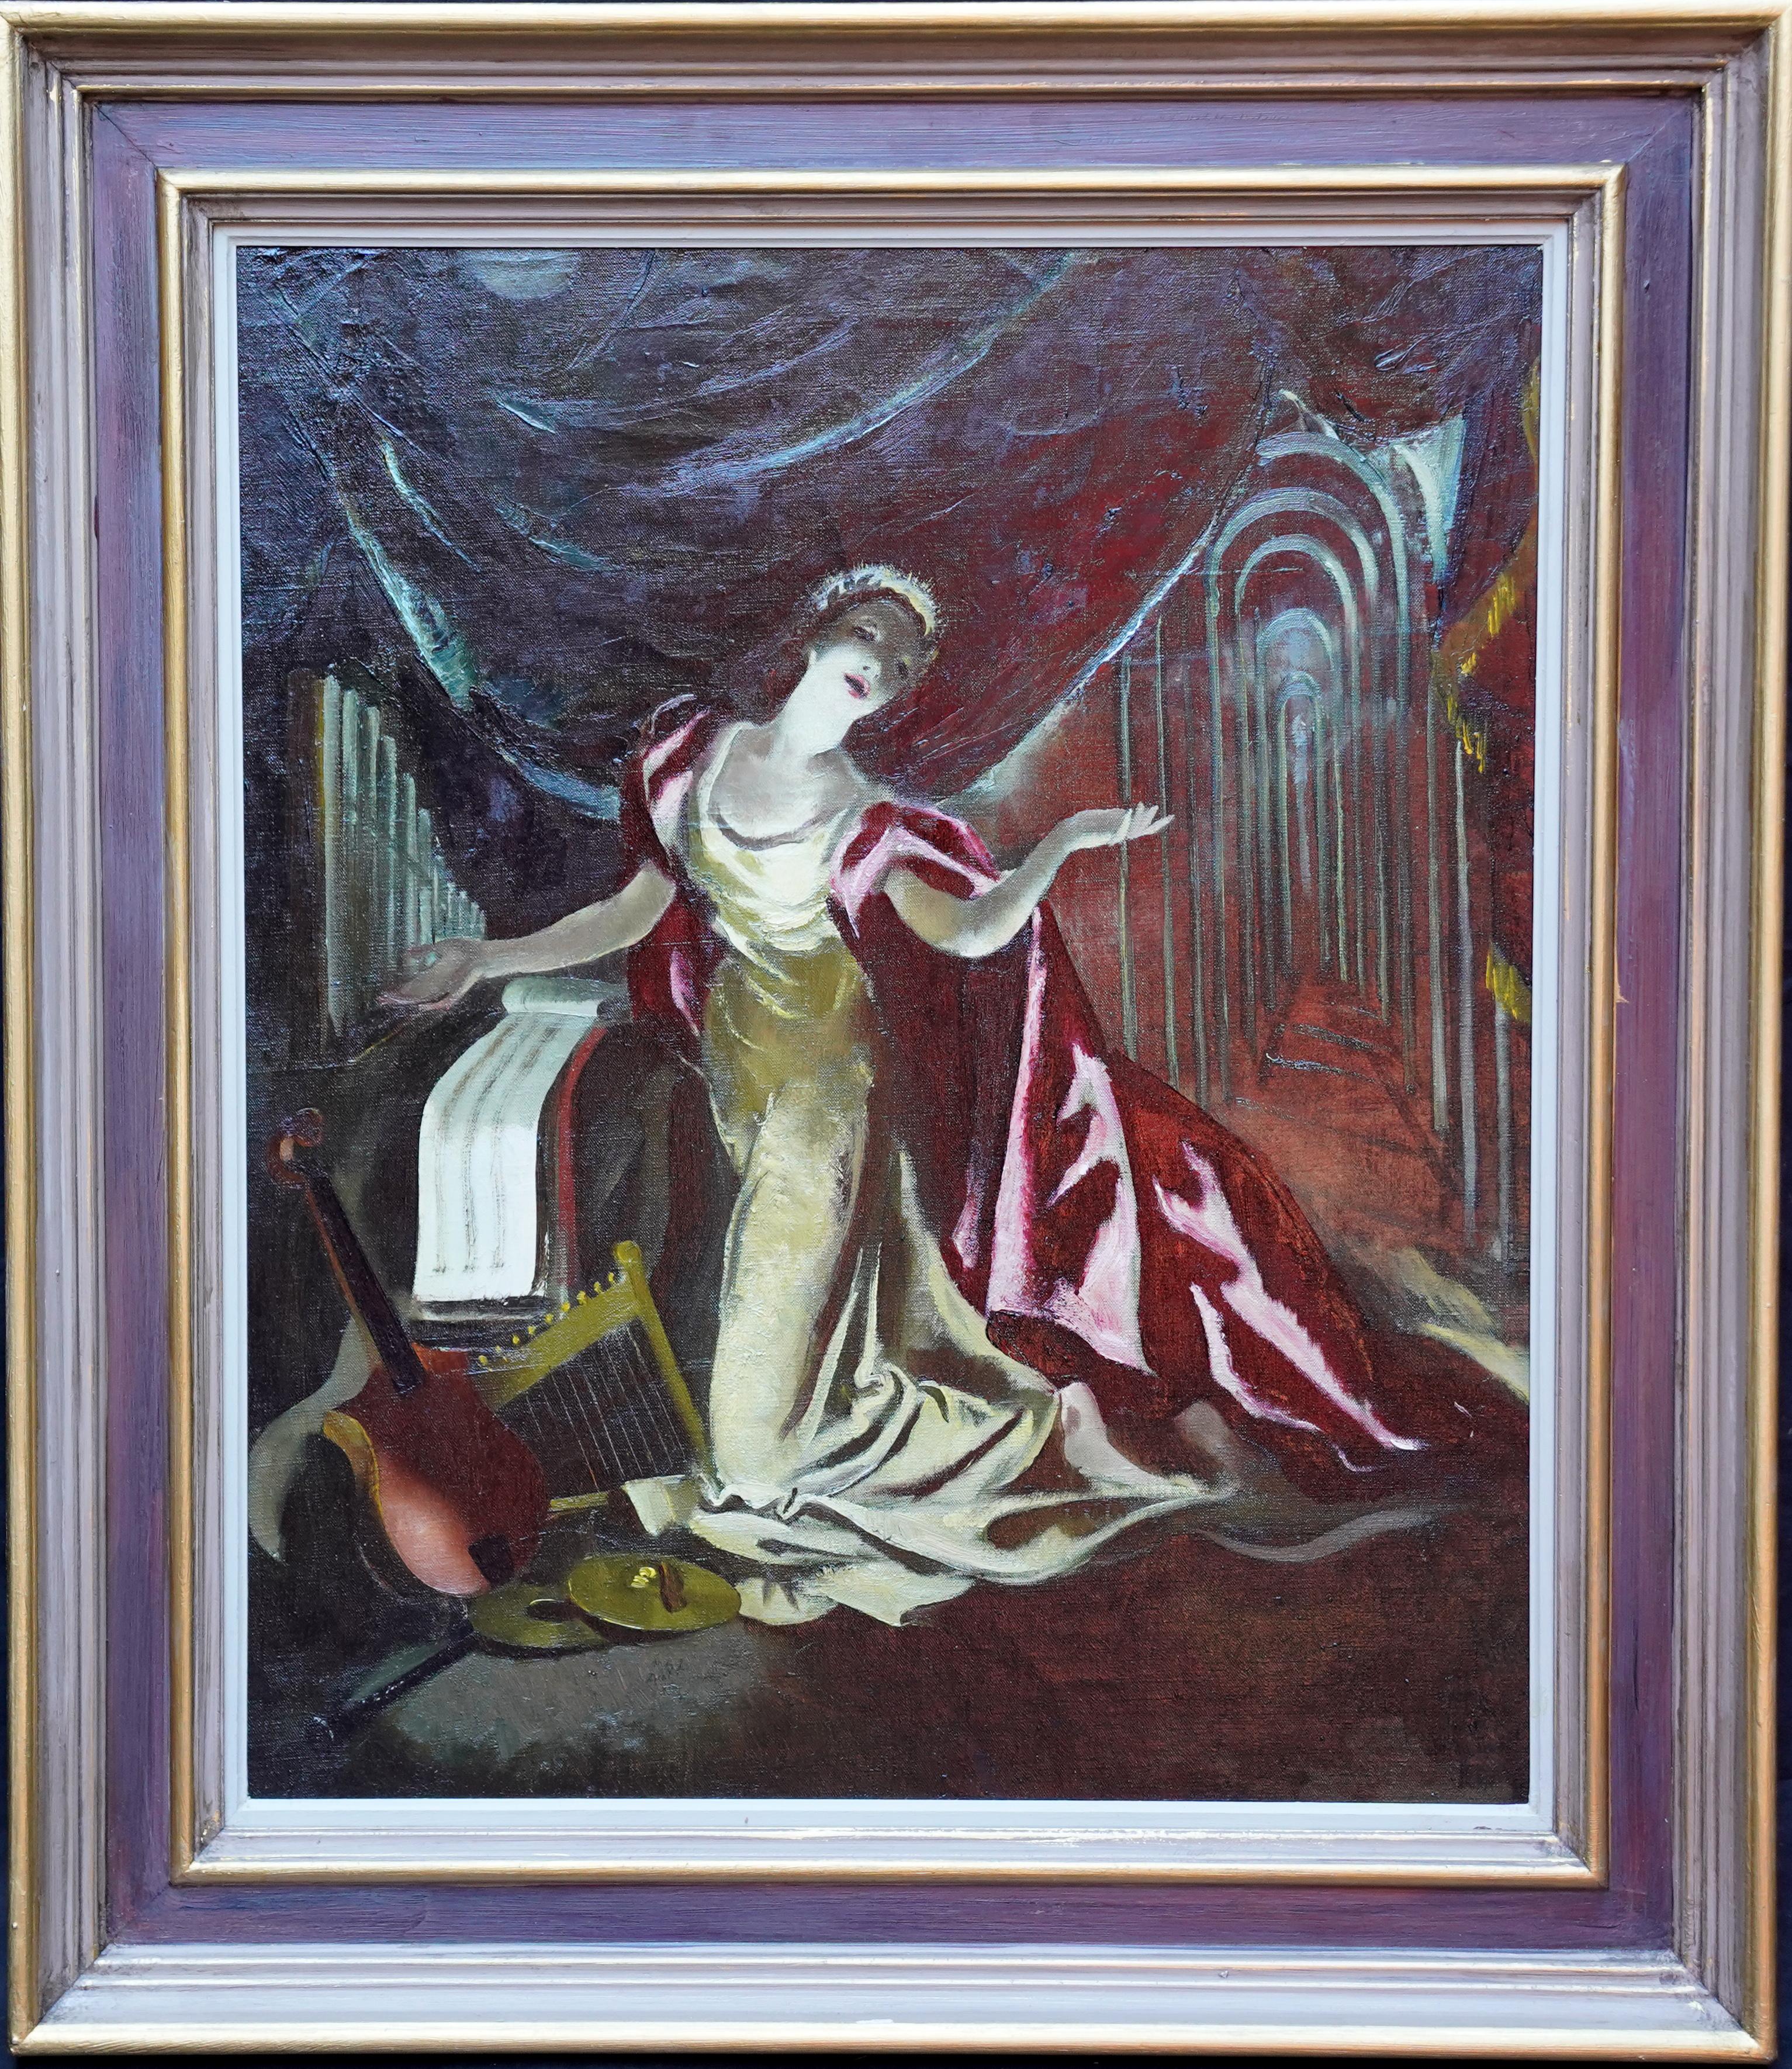 Doris Zinkeisen Portrait Painting - Portrait on Stage - Red Cape - Scottish 60s art theatrical portrait oil painting